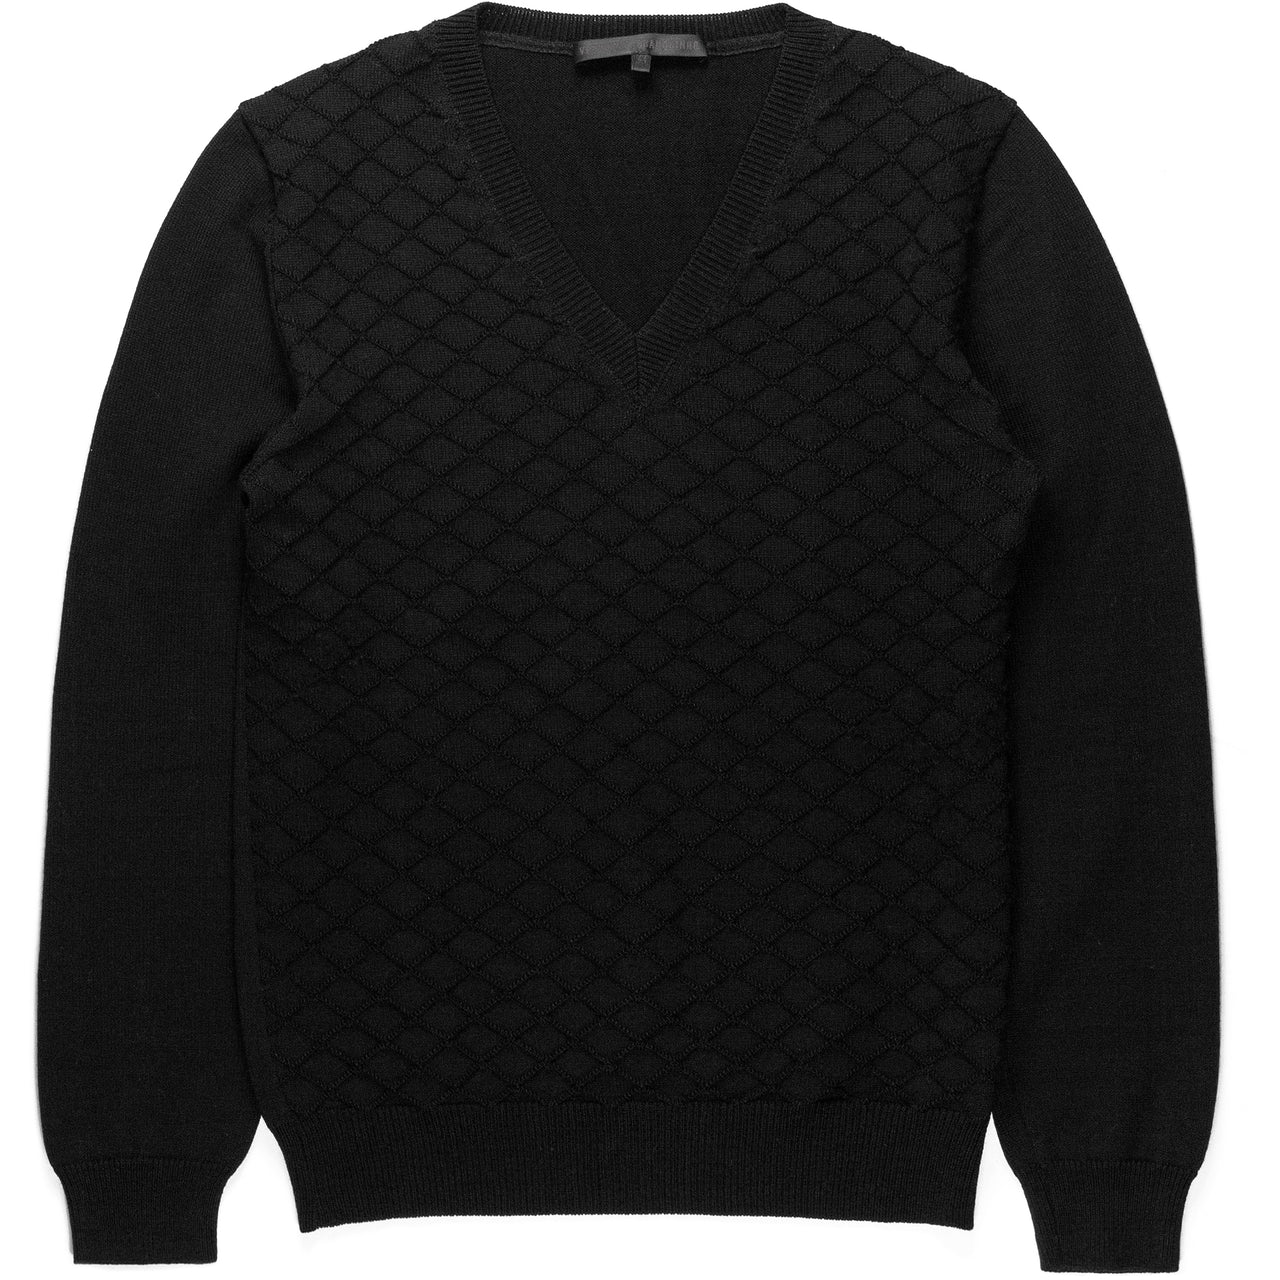 Veronique Branquinho Man Black V-Neck Sweater